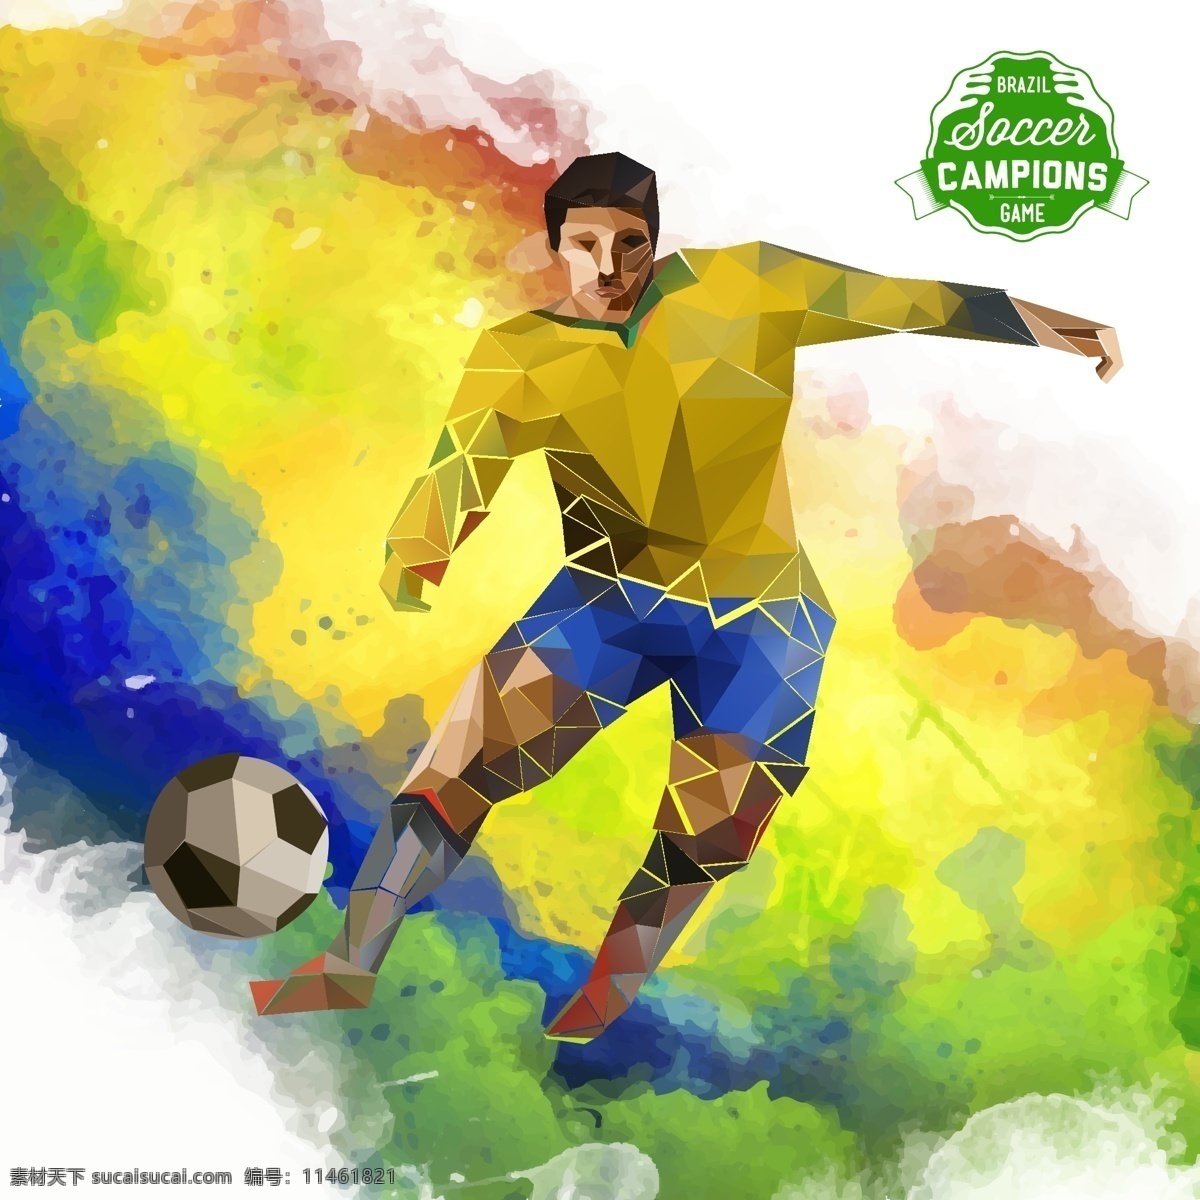 彩色 晕染 背景 足球 运动员 巴西世界杯 体育运动 世界杯 卡通运动员 足球运动员 彩色颜料背景 晕染背景 时尚背景 足球主题 生活百科 矢量素材 白色